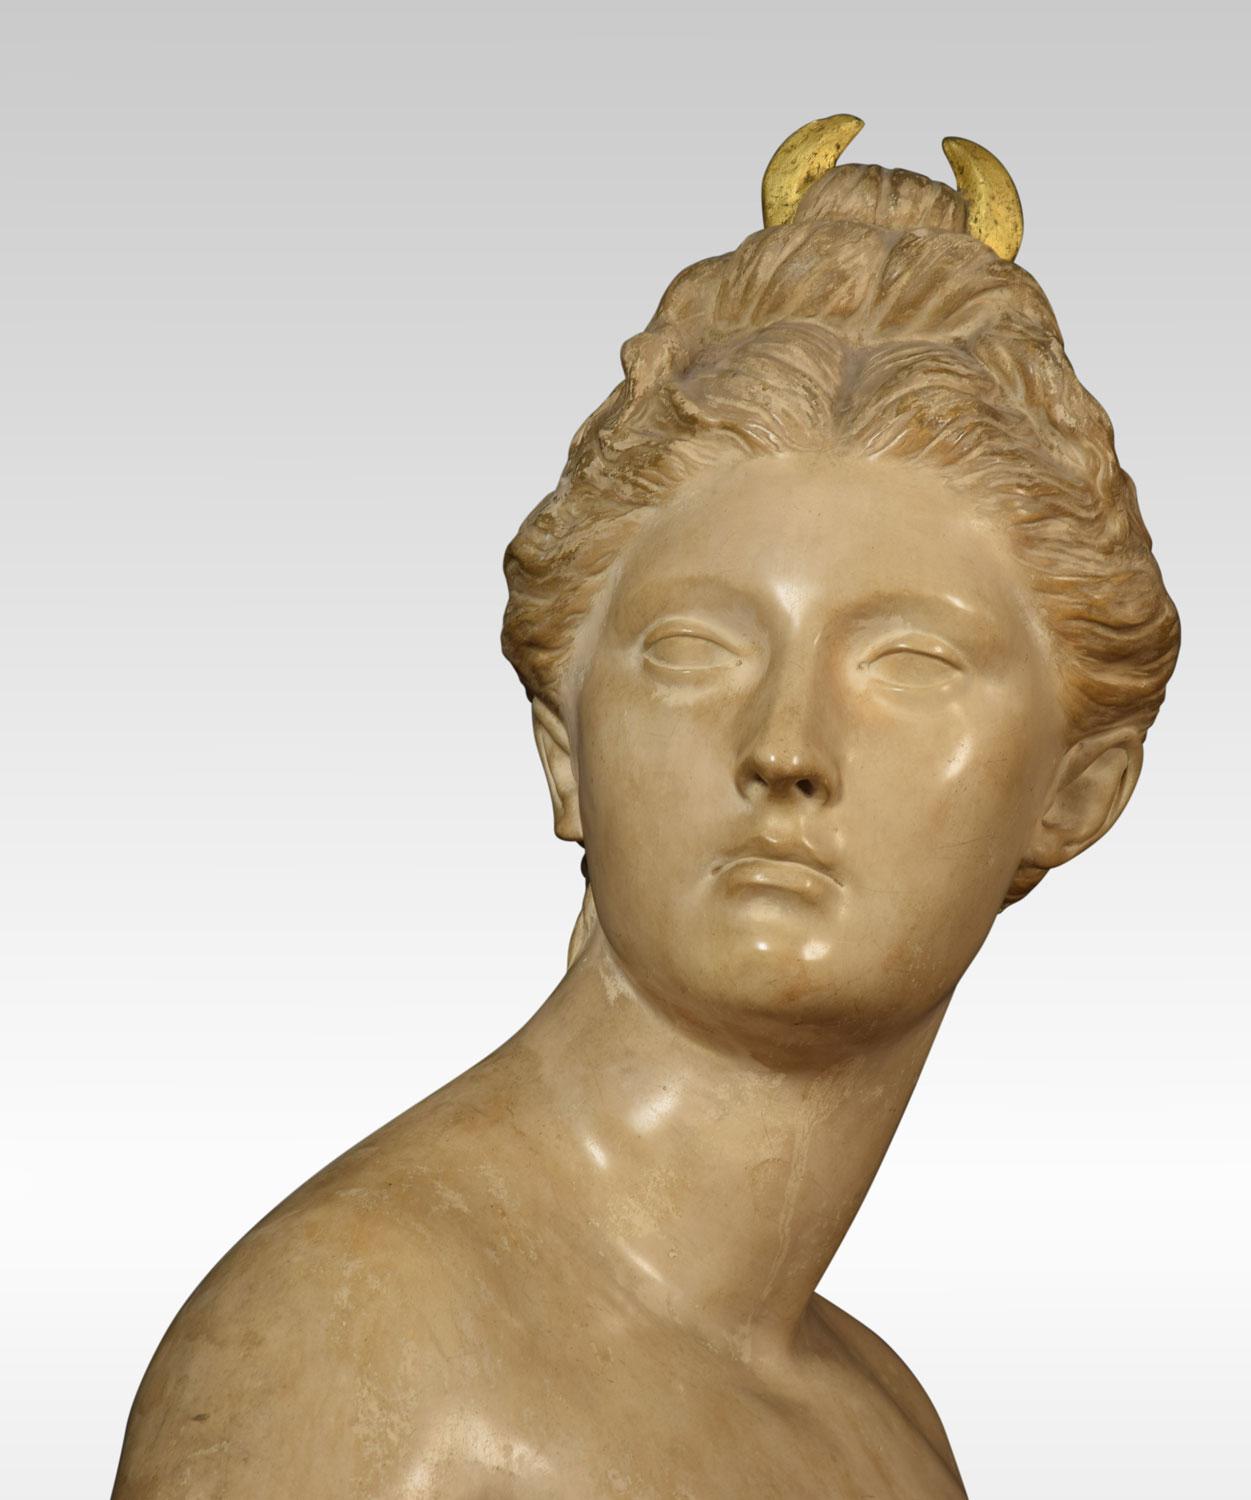 Friedrich Goldscheider Büste, der Göttin der Nacht mit vergoldeter Mondsichel im Haar.
Abmessungen:
Höhe 28 Zoll
Breite 16 Zoll
Tiefe 10,5 Zoll.